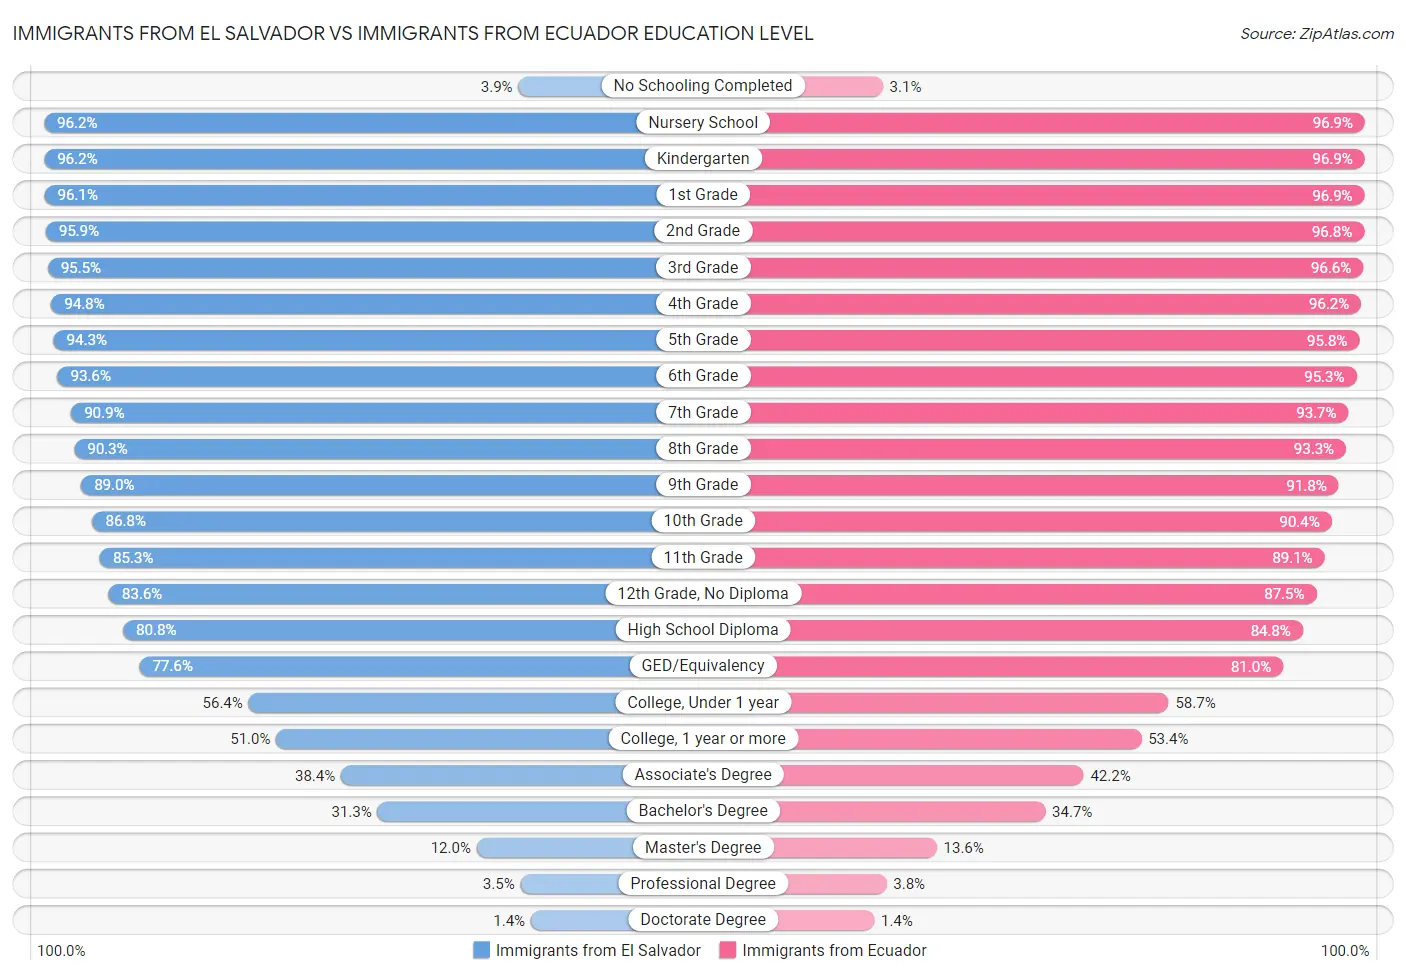 Immigrants from El Salvador vs Immigrants from Ecuador Education Level